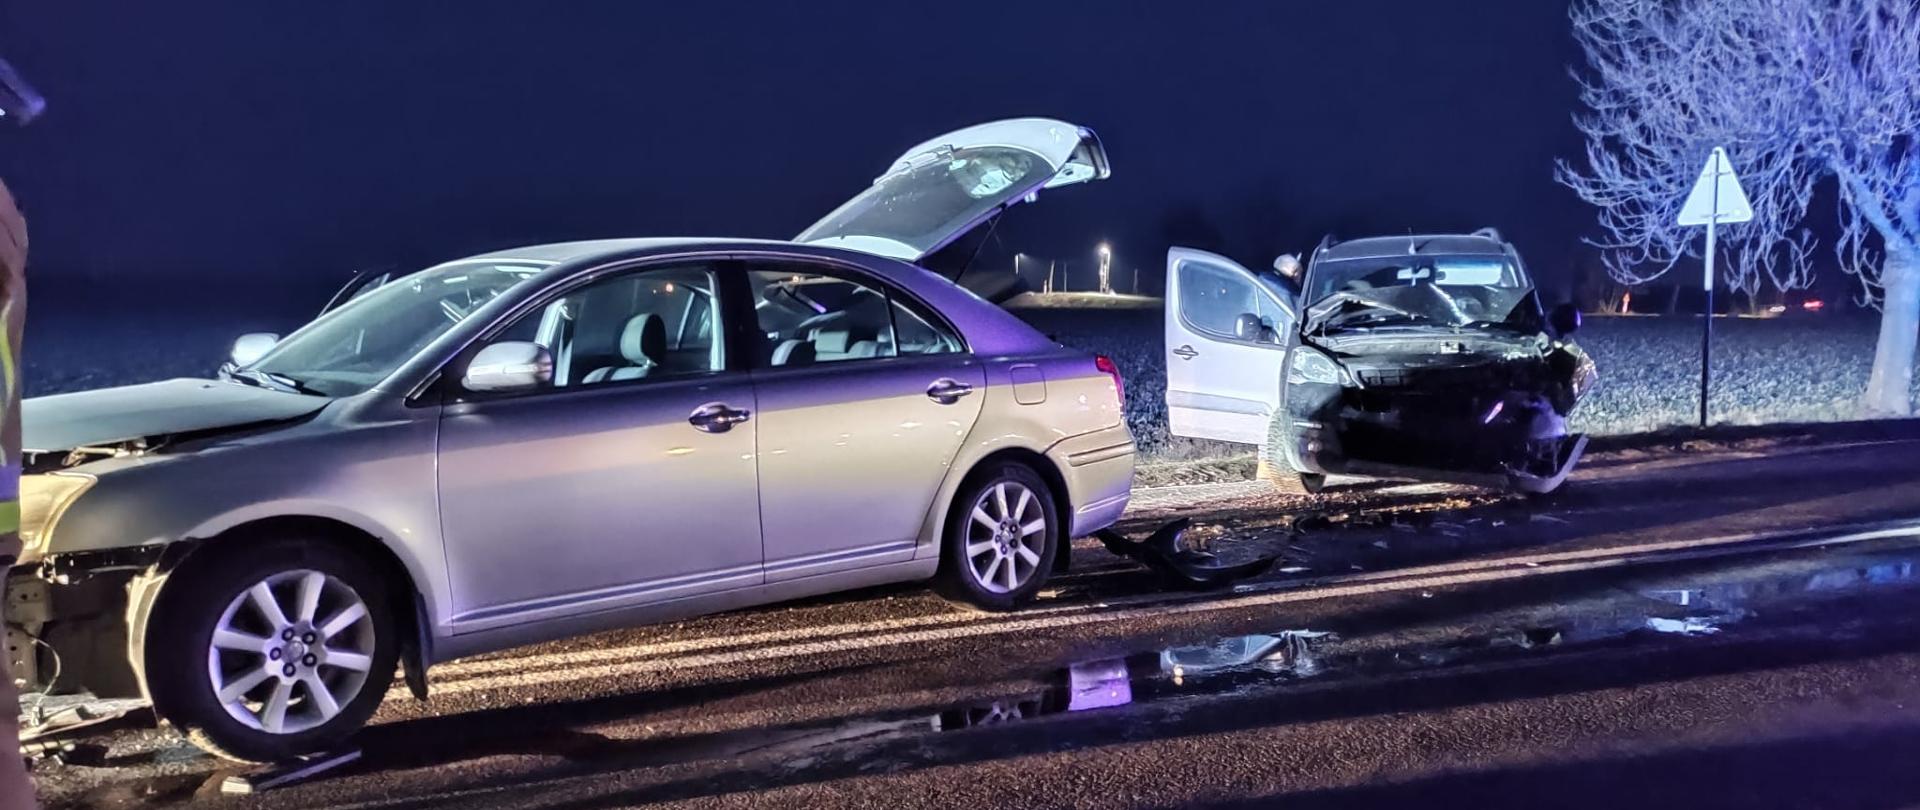 Zdjęcie przedstawia z lewej strony srebrny samochód osobowy z uszkodzonym przodem, po prawej strony drujgi srebrny samochód z uszkodzonym przodem